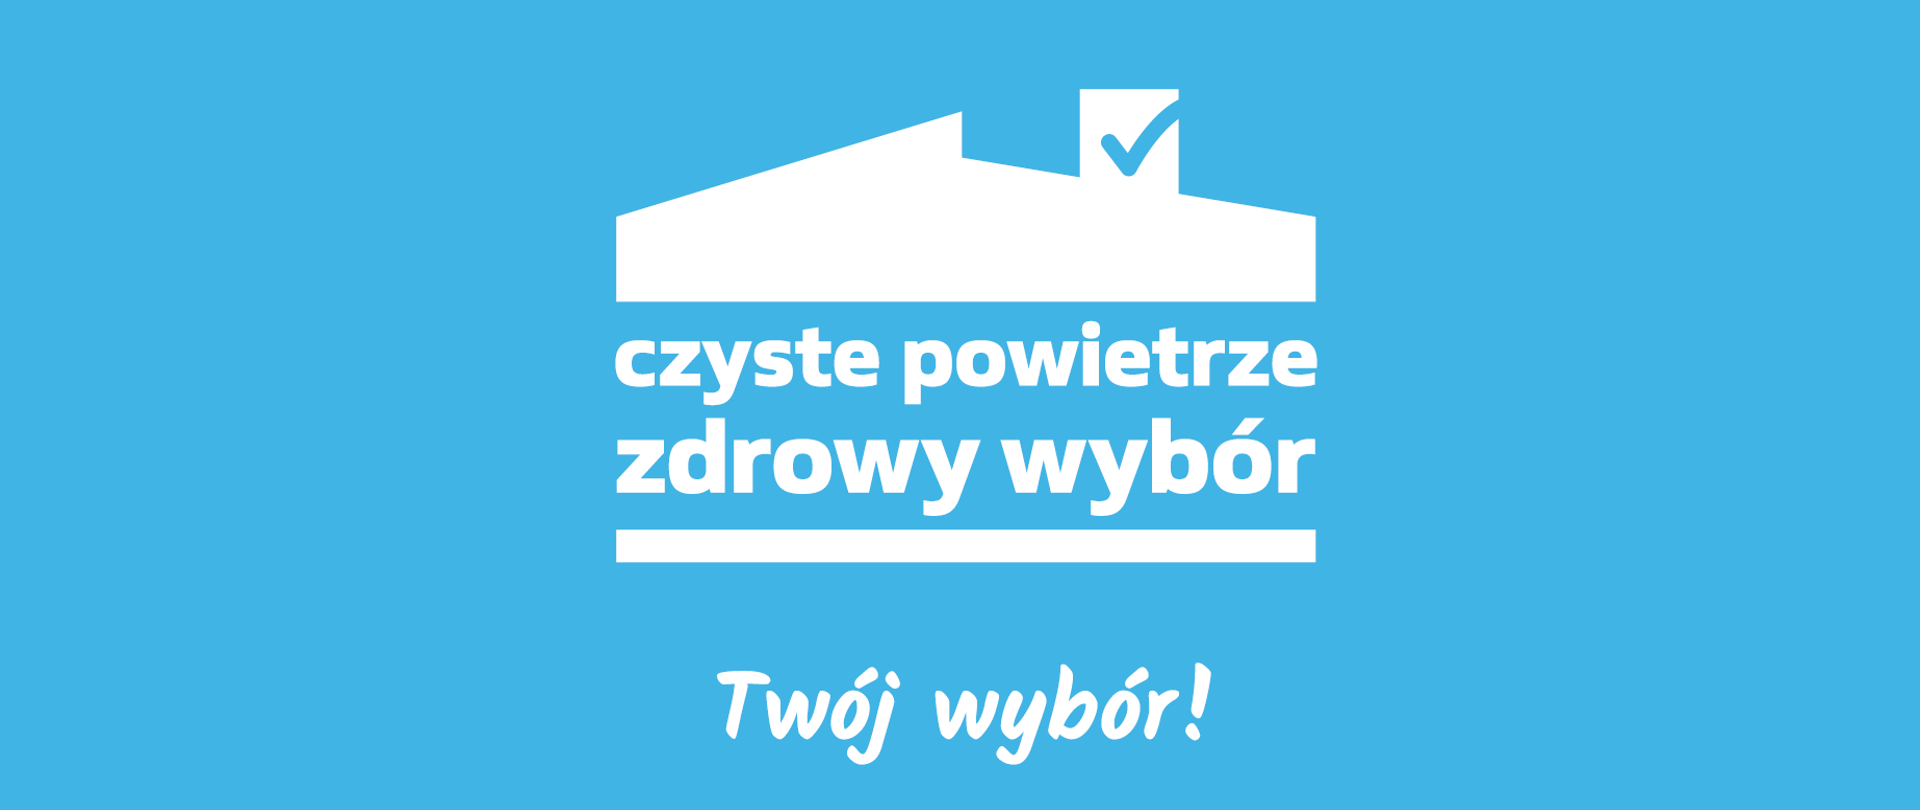 Logotyp programu "Czyste powietrze", który przedstawia dom i napis "czyste powietrze zdrowy wybór - Twój wybór!" będące w kolorze białym na niebieskim tle